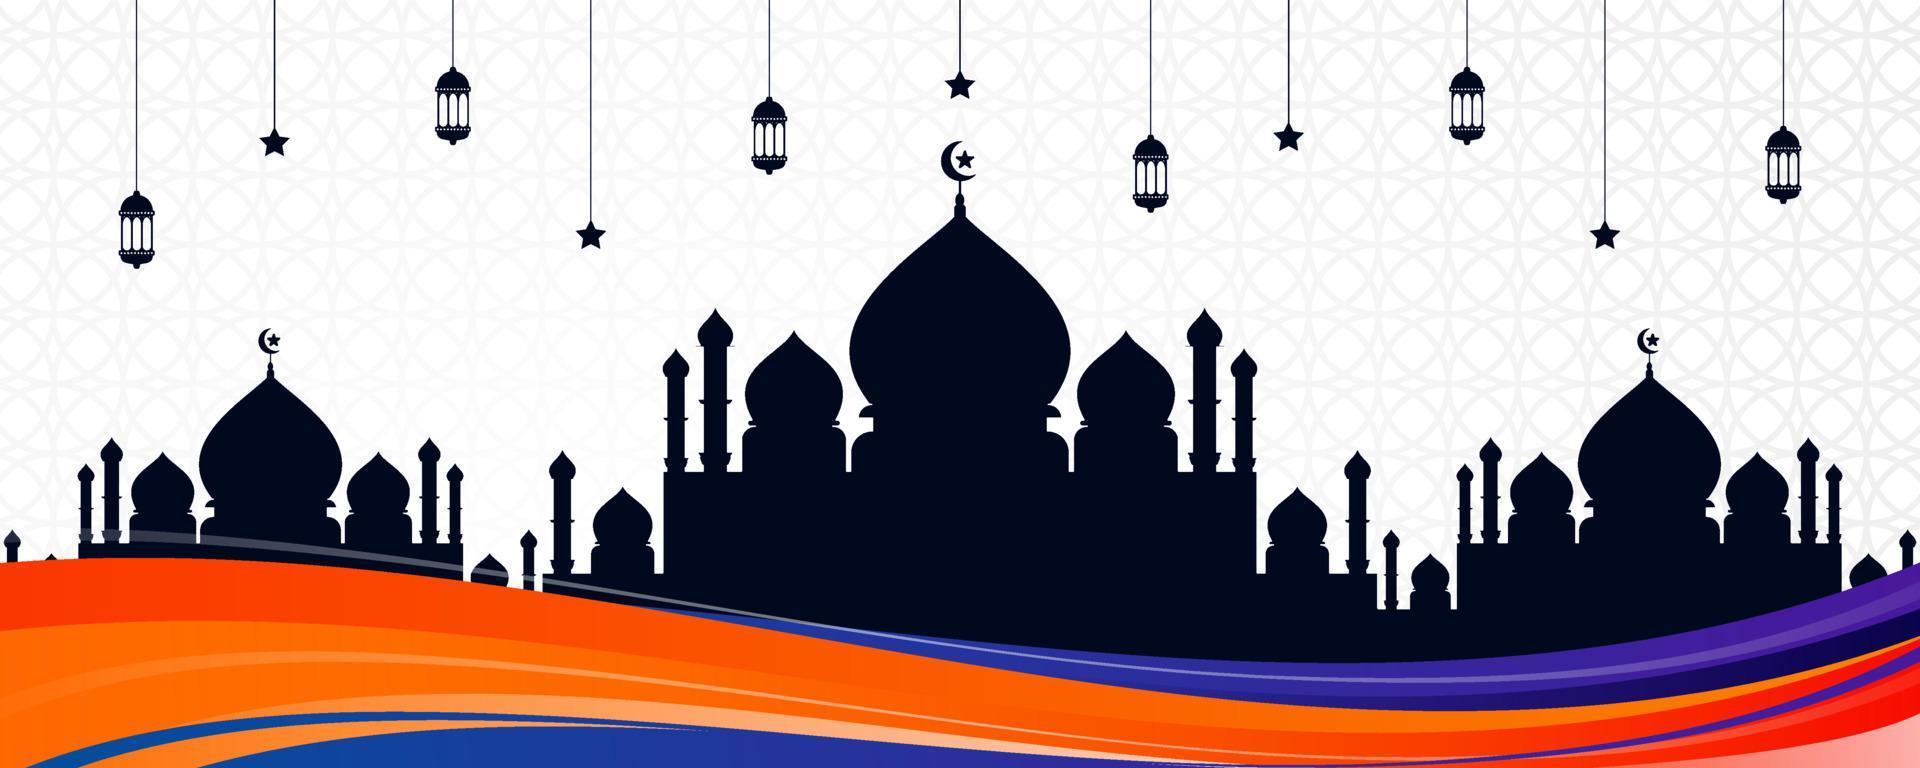 banner de cartão islâmico com design de onda colorida, silhueta de mesquita e ornamentos árabes. belo fundo eid al fitr com lanternas penduradas, estrelas e onda abstrata colorida vetor